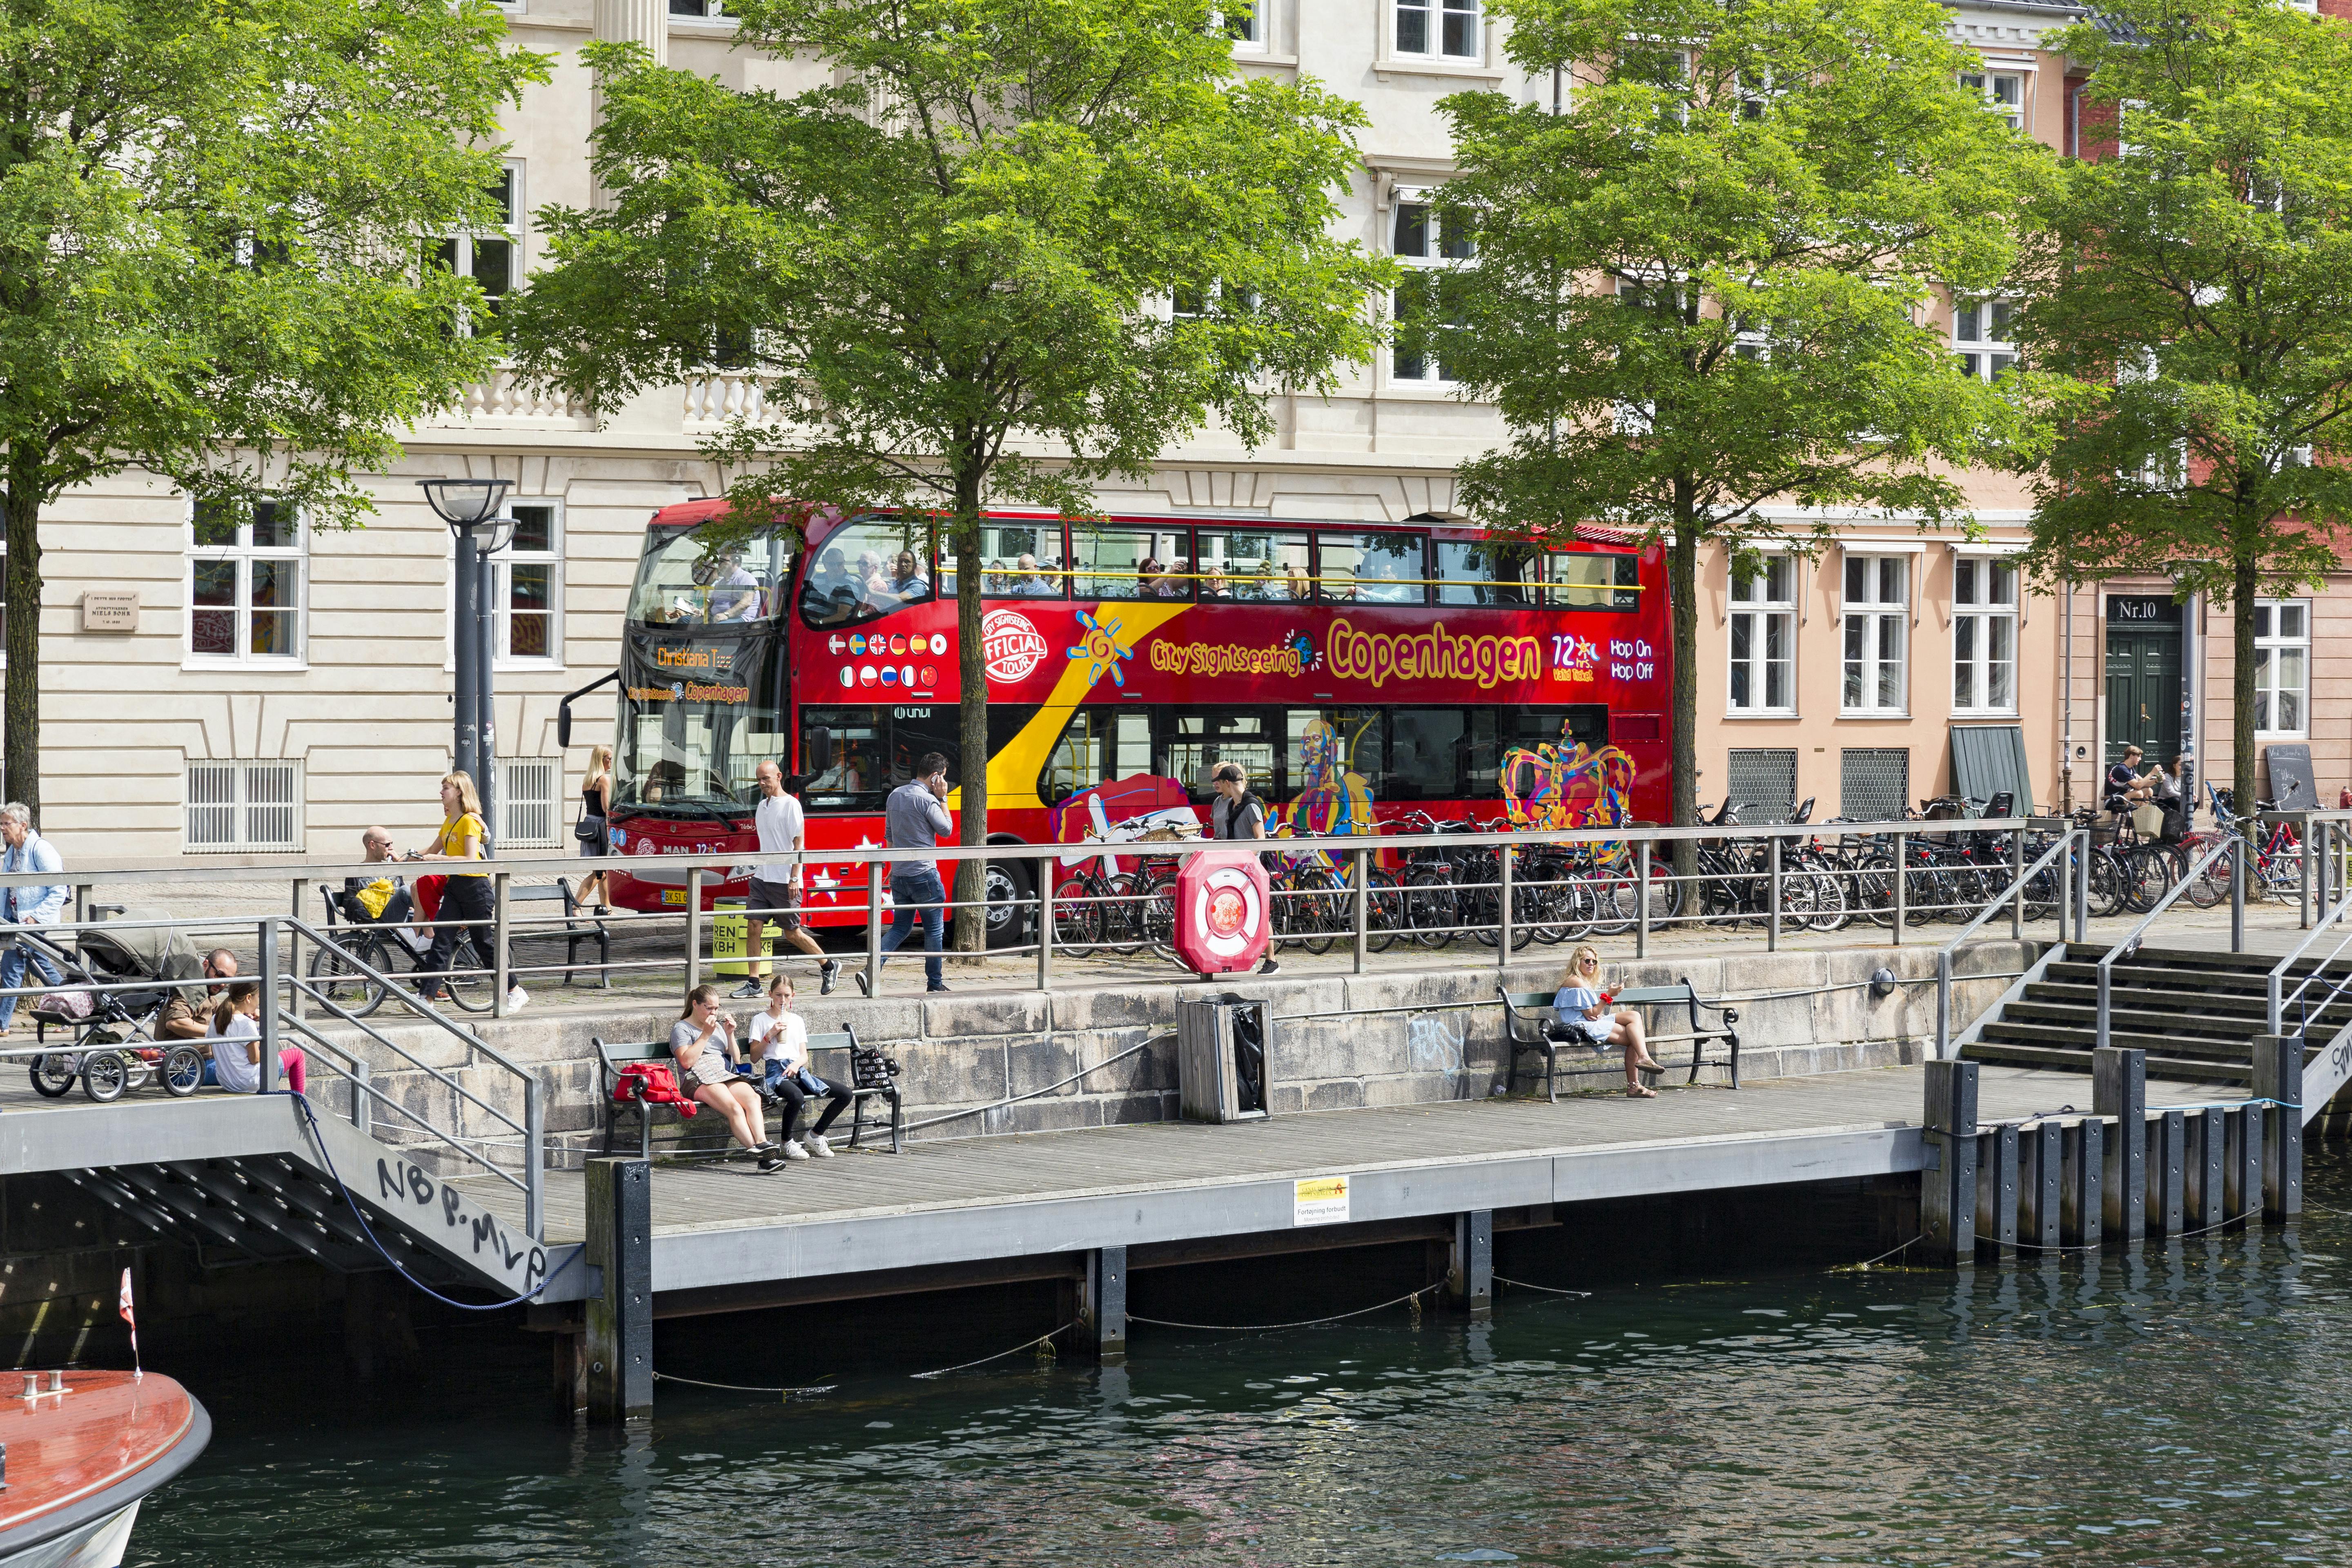 Billete para el autobús turístico City Sightseeing de Copenhague